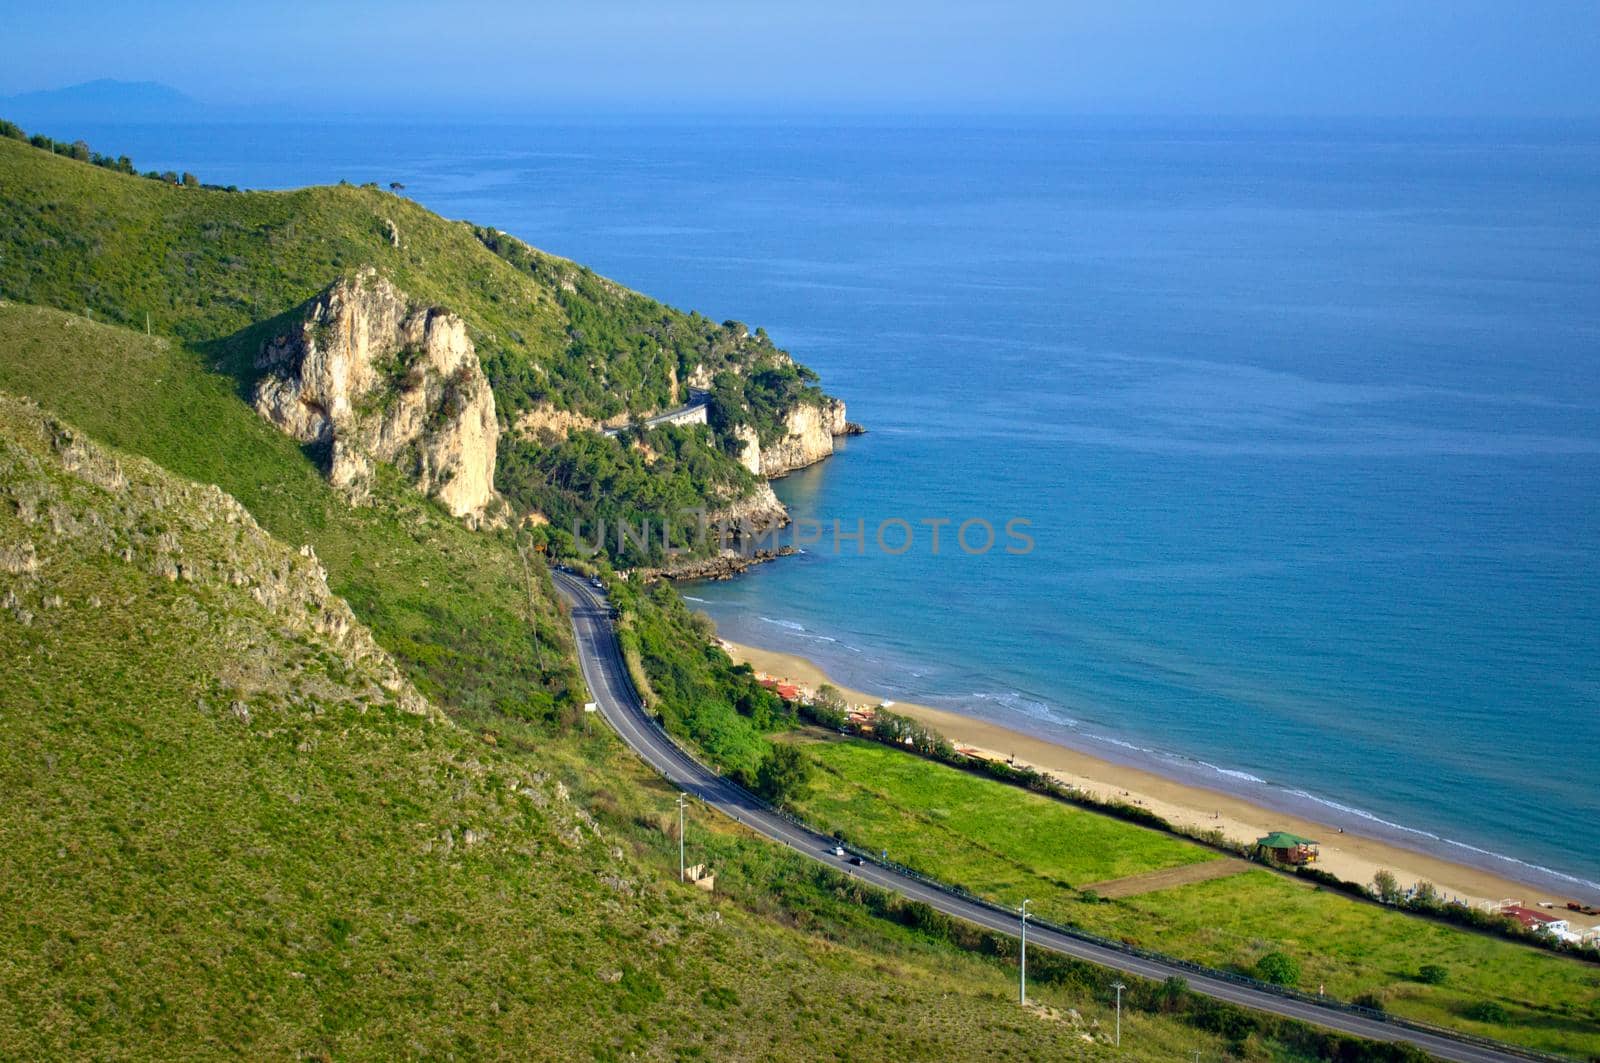 Coastal road near Terracina, Italy. by hernan_hyper